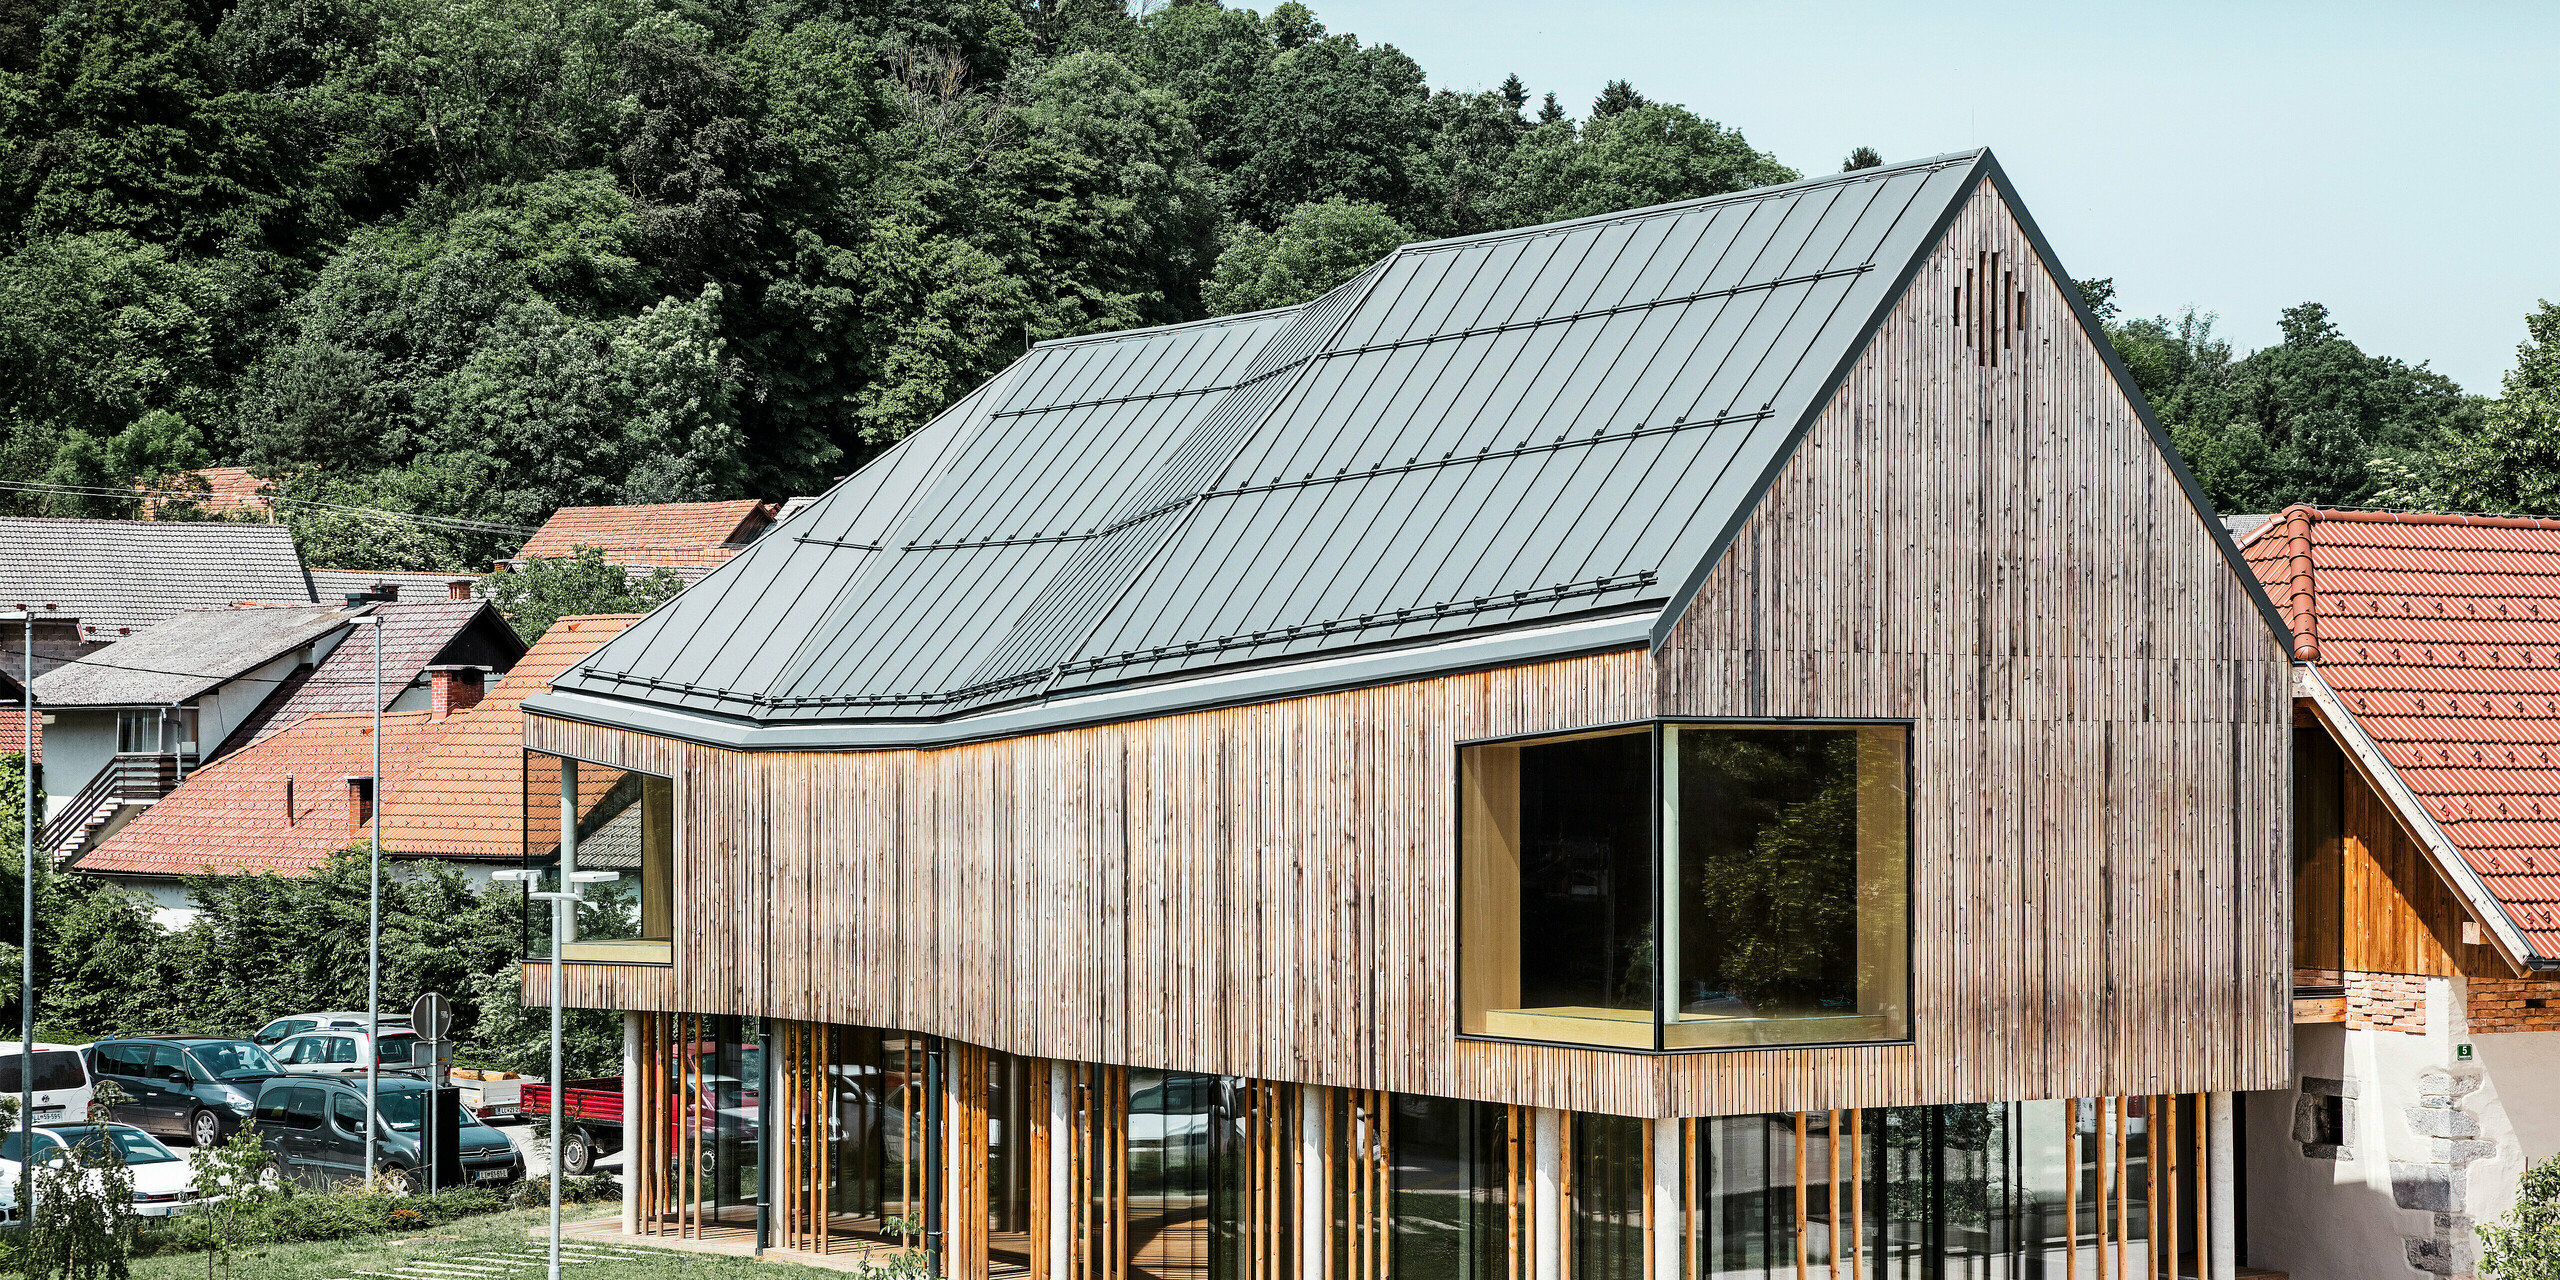 Detailní architektonický záběr návštěvnického centra v Ig ve Slovinsku, vyznačující se moderní dřevěnou fasádou a podepřenou řadou štíhlých sloupů. Charakteristická tmavě šedá střecha PREFALZ plynule zapadá do přírodního a venkovského prostředí a nabízí vzrušující kontrast k okolním tradičním červeným taškovým střechám. Tato budova je příkladem závazku PREFA k inovativním a udržitelným stavebním materiálům.